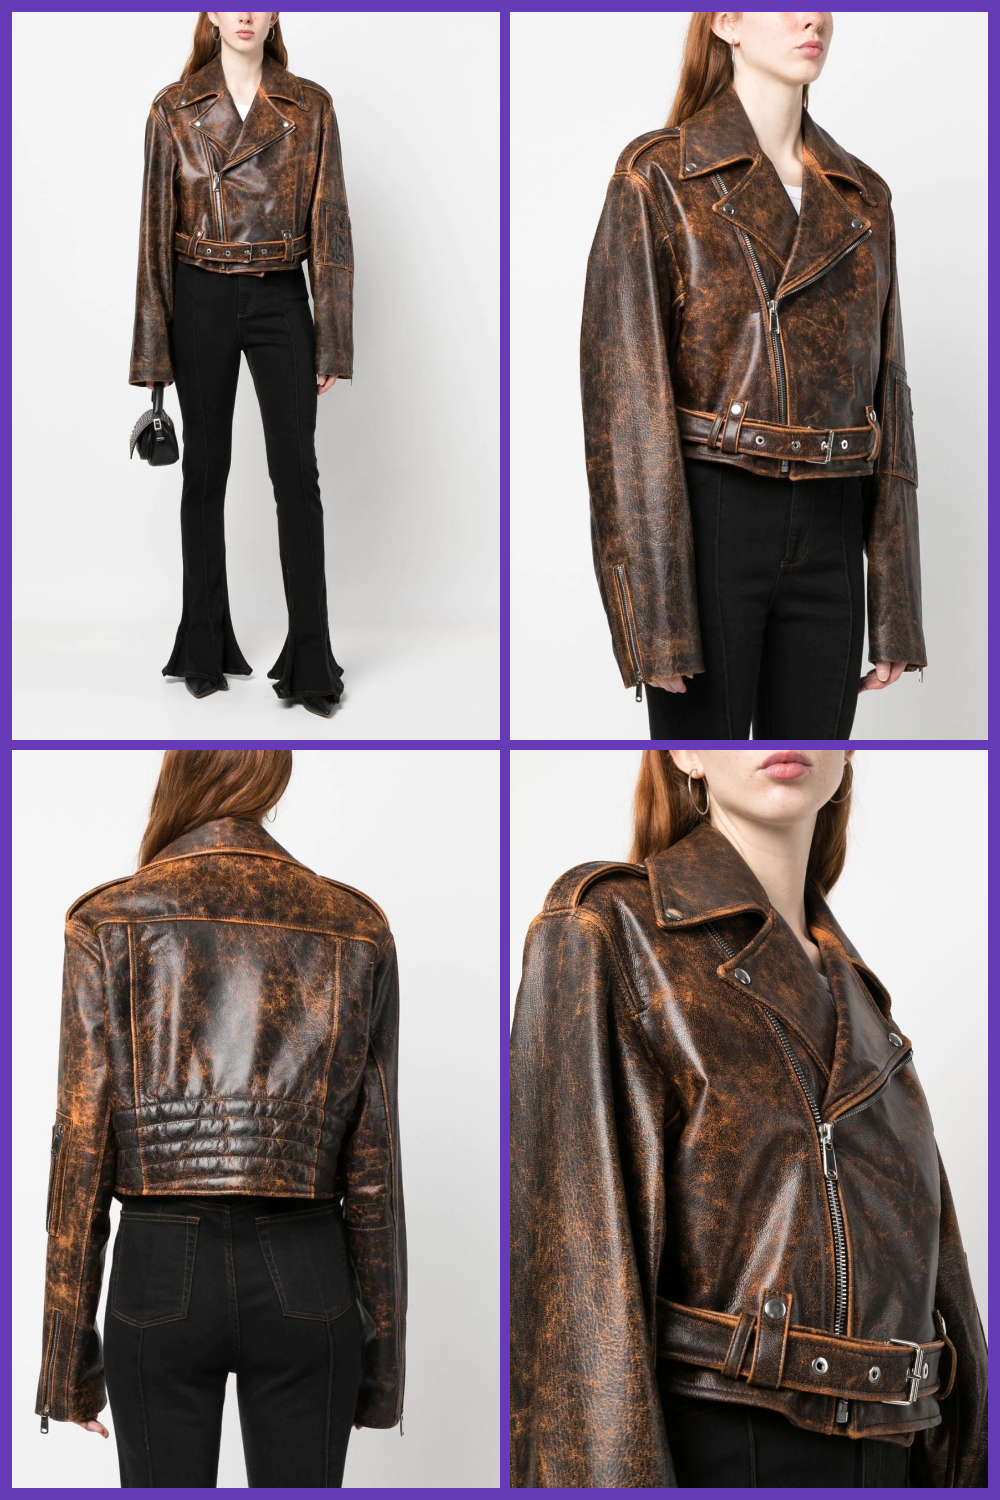 Manokhi marbled leather jacket.